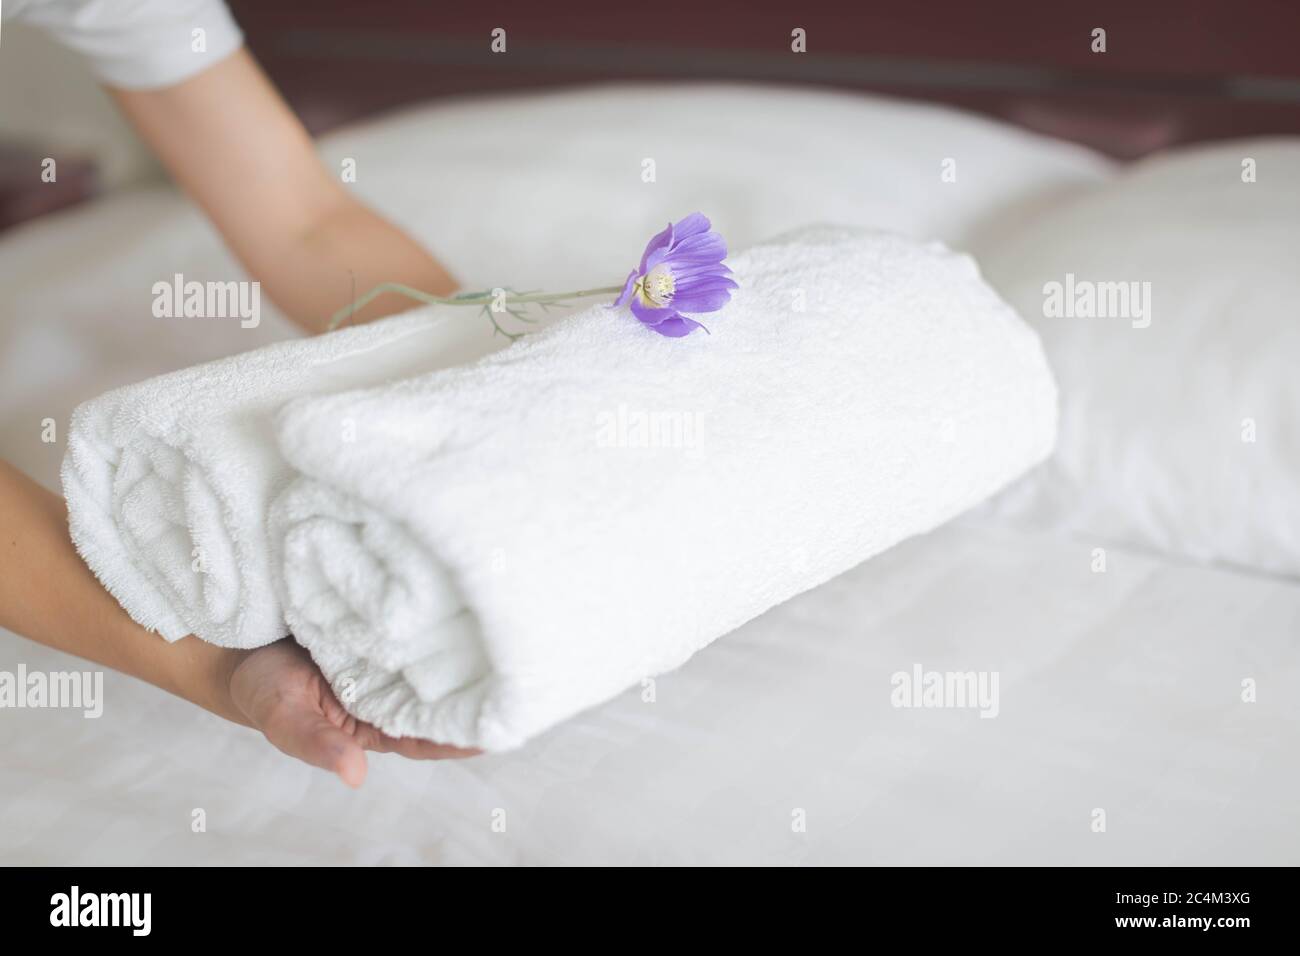 La camarera de piso colocó dos rollos de toallas en una cama de hotel con una flor púrpura Foto de stock